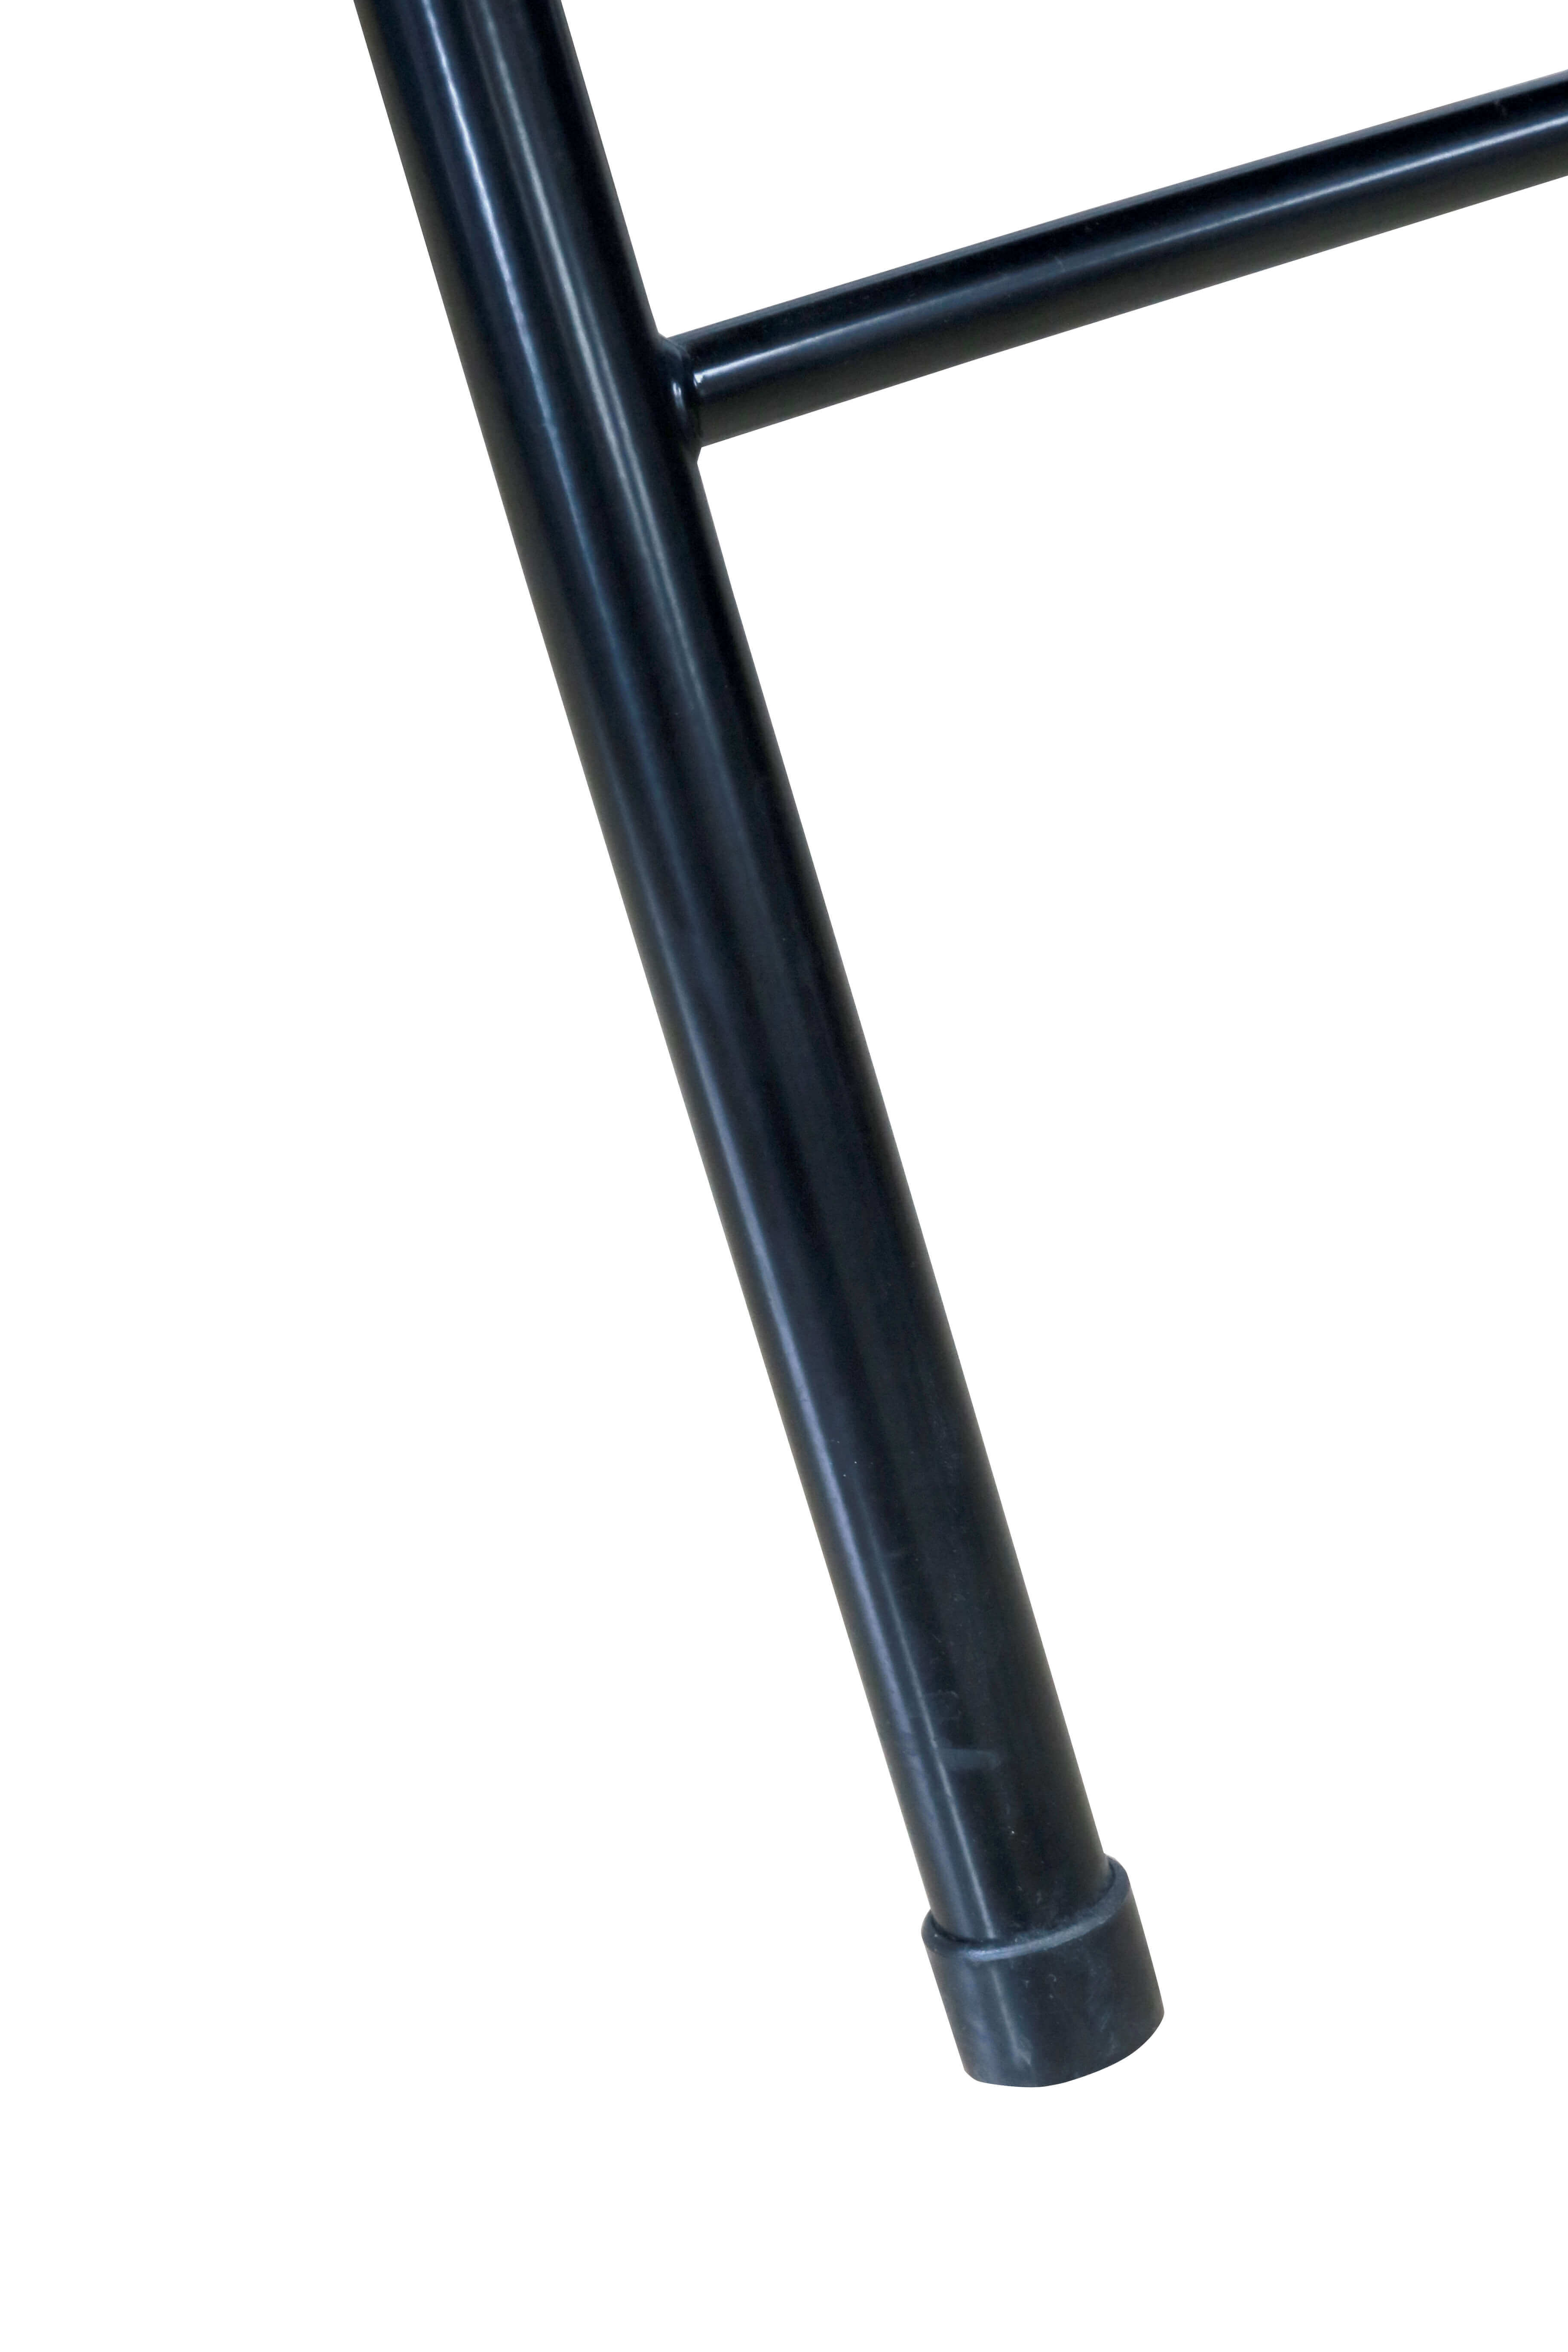 Chaise pliante Metal Noire Argon M0